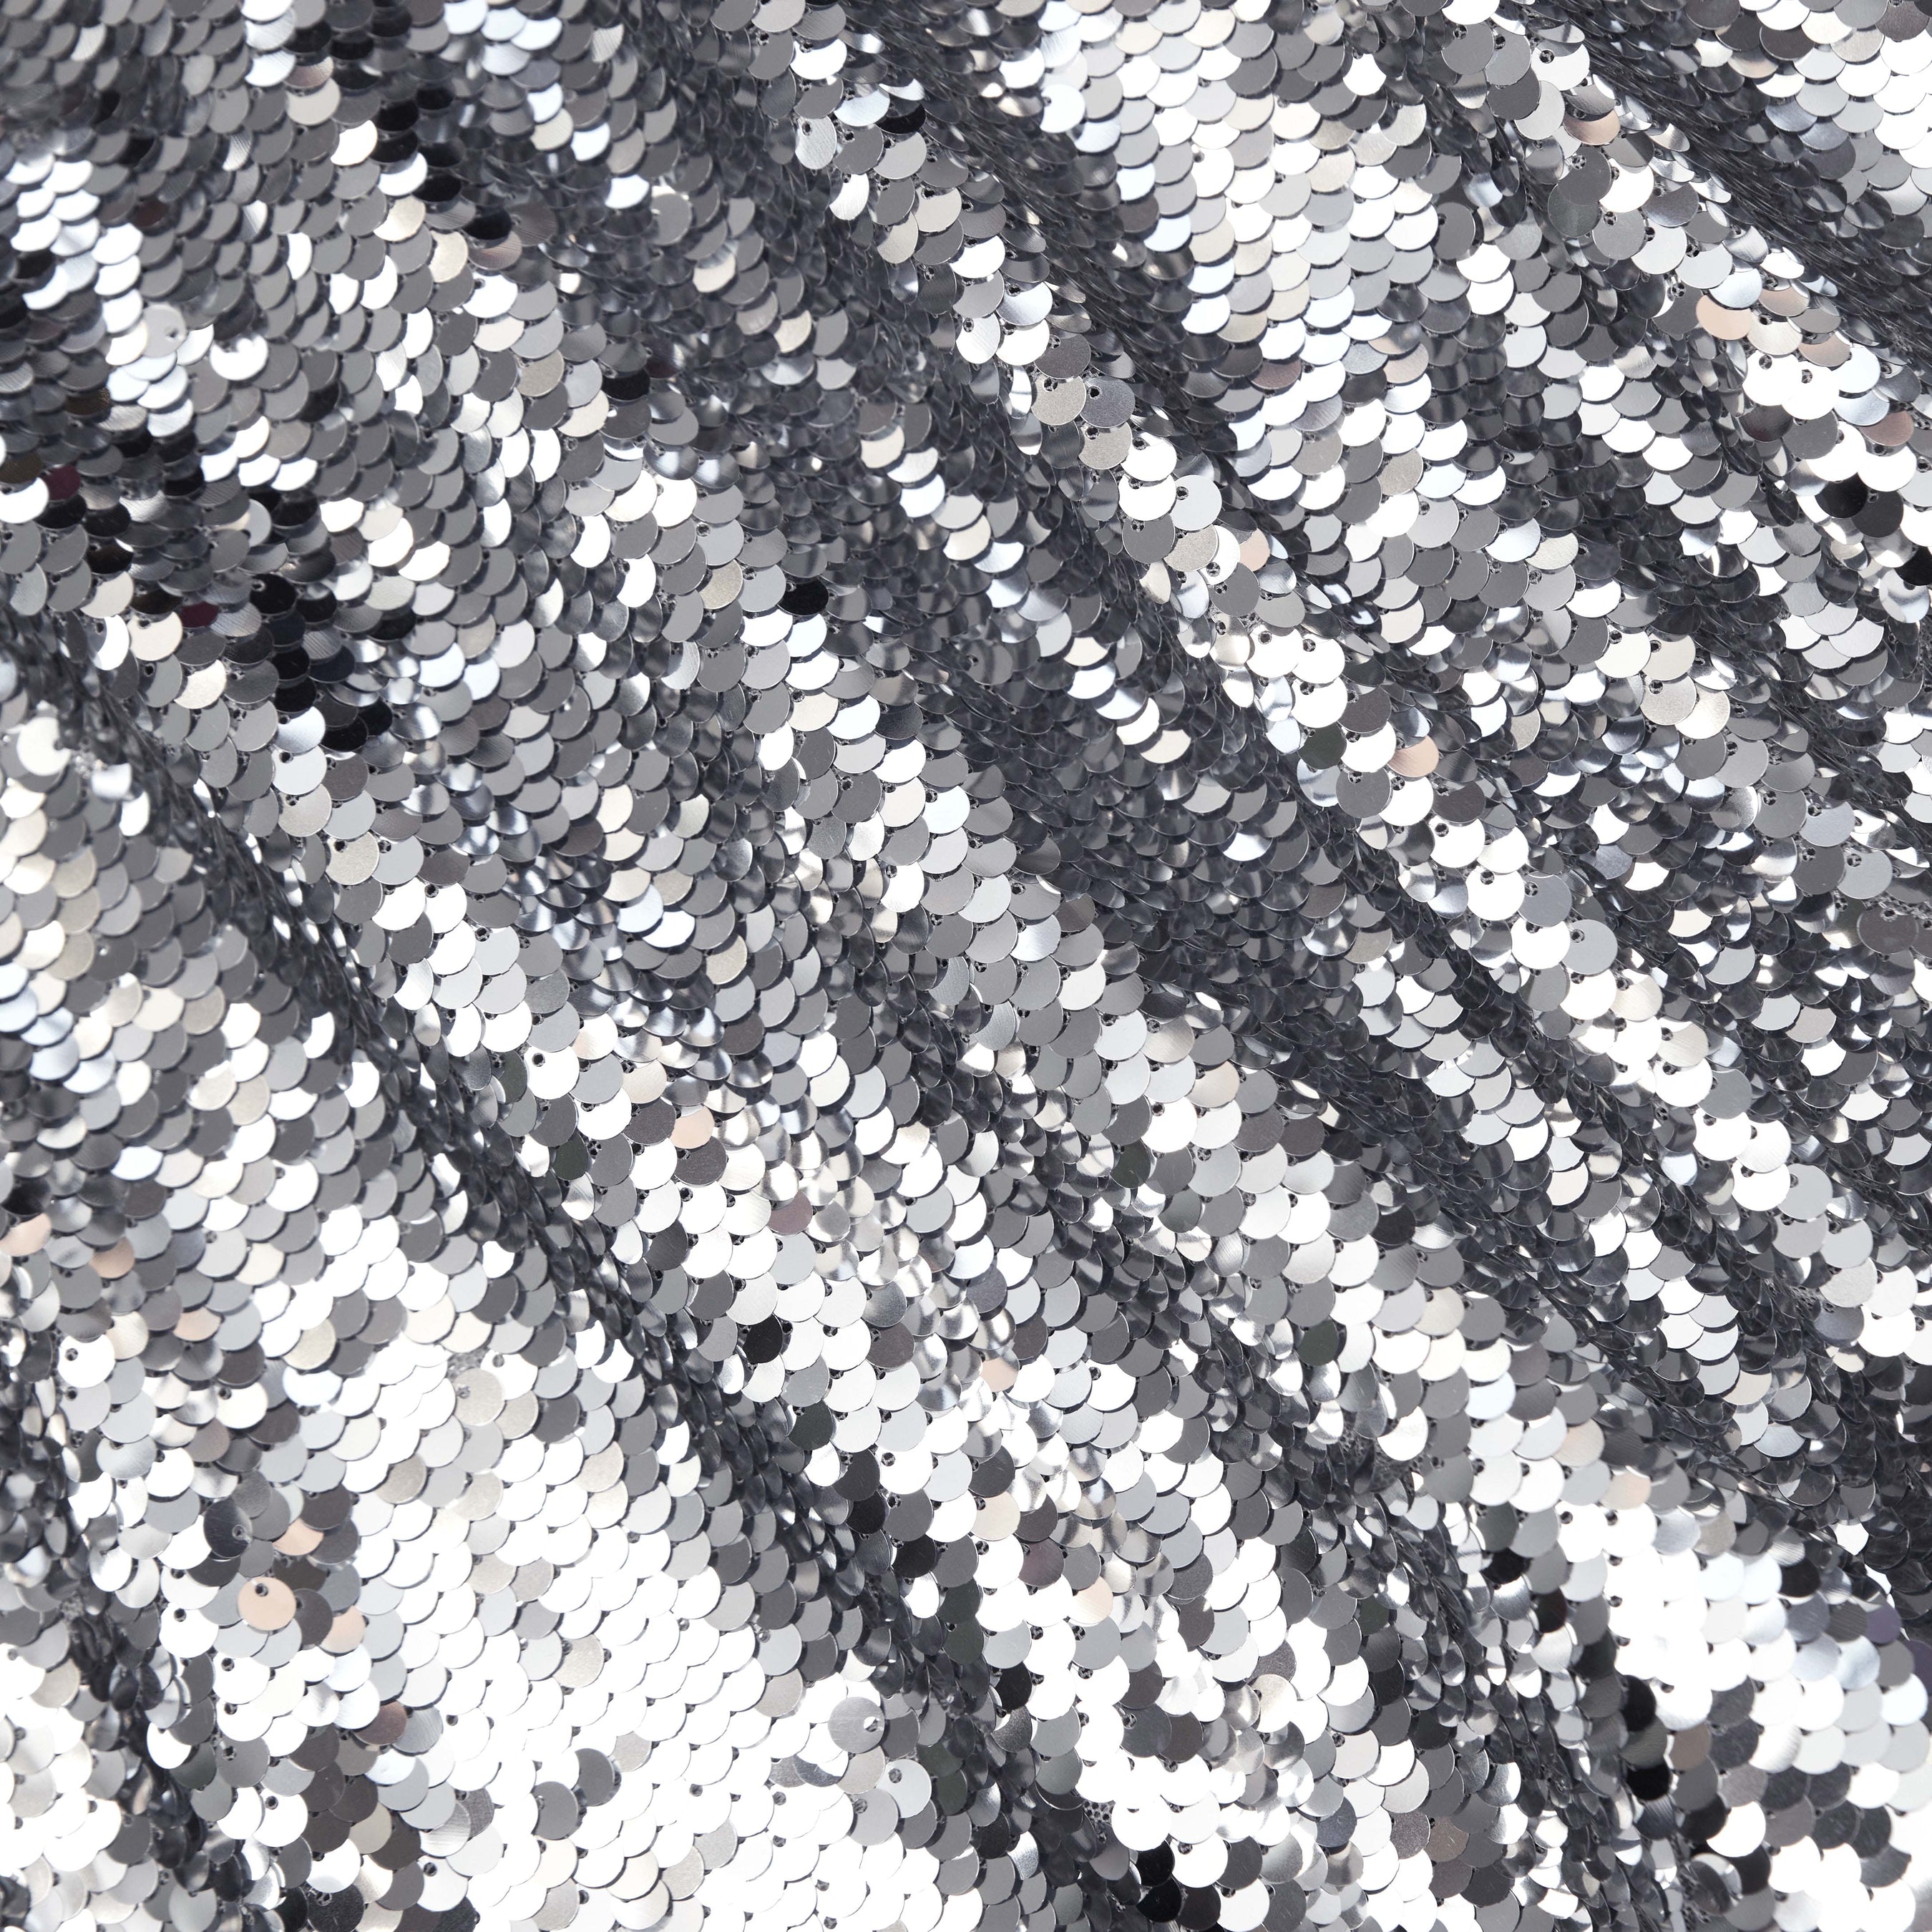 Silver Sequin Twist Neck Midi Dress